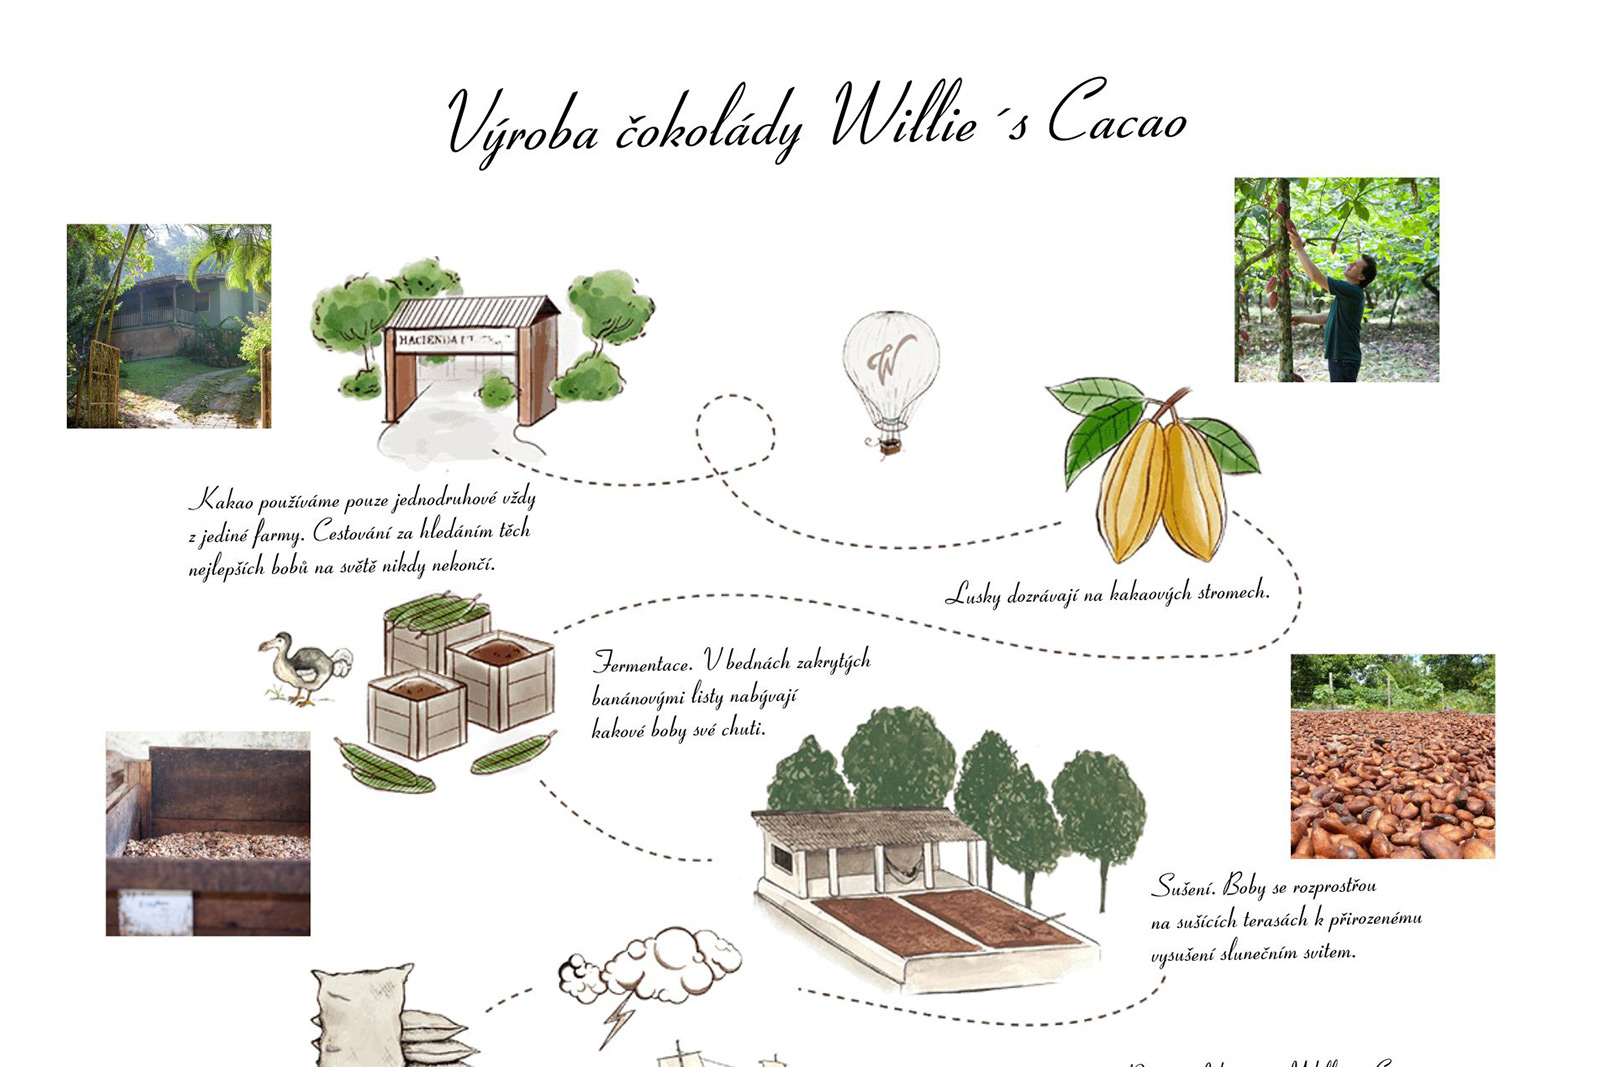 Výroba čokolády Willie´s cacao